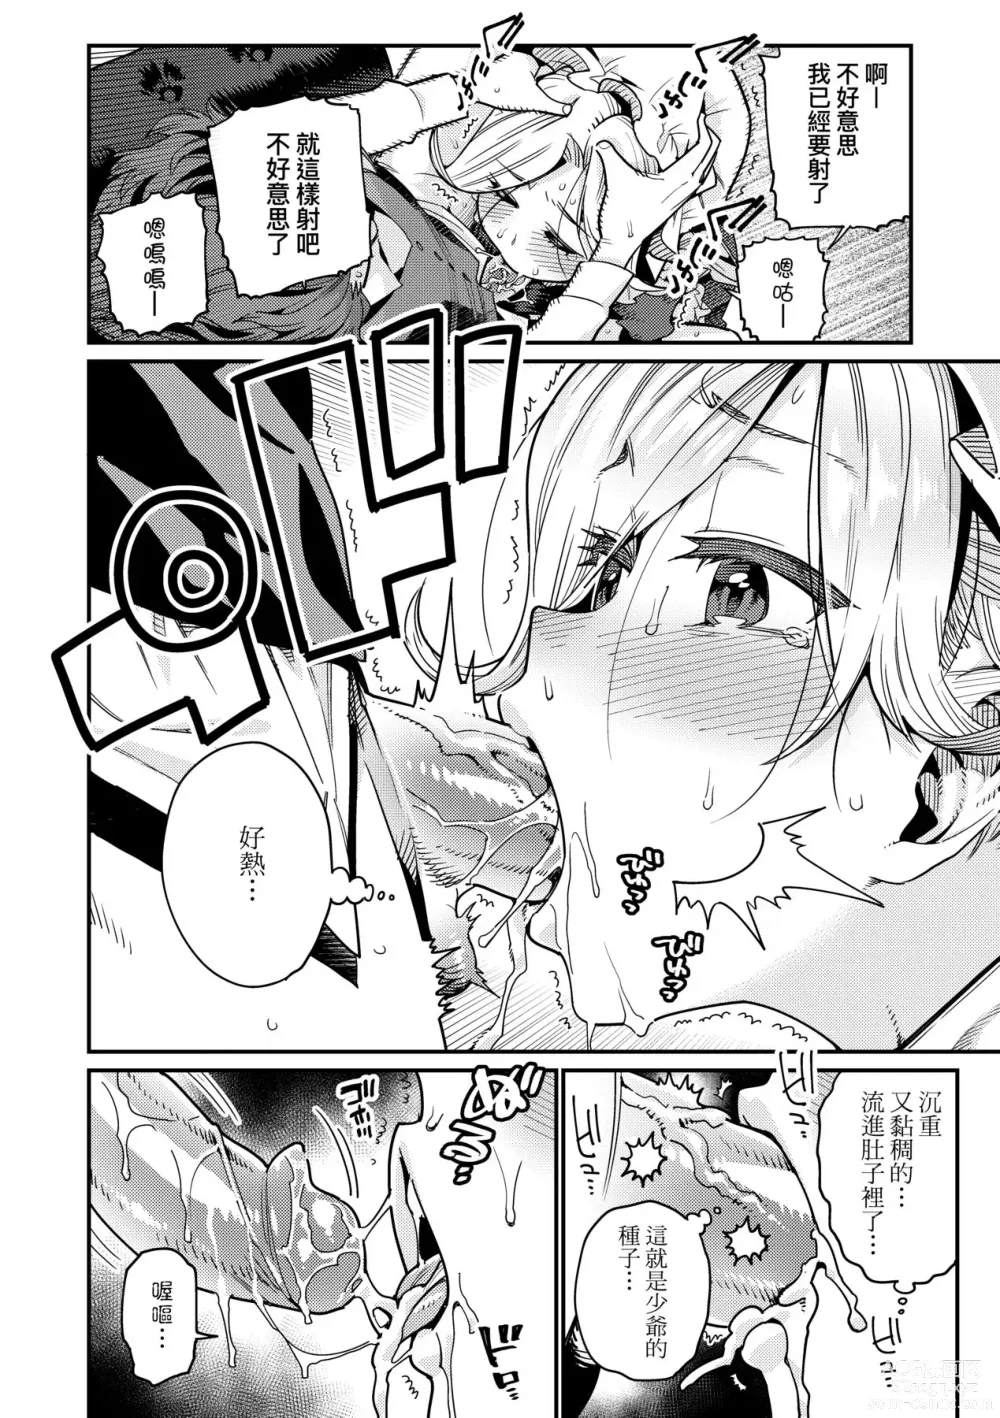 Page 11 of manga Itoshiki Wagaya (decensored)